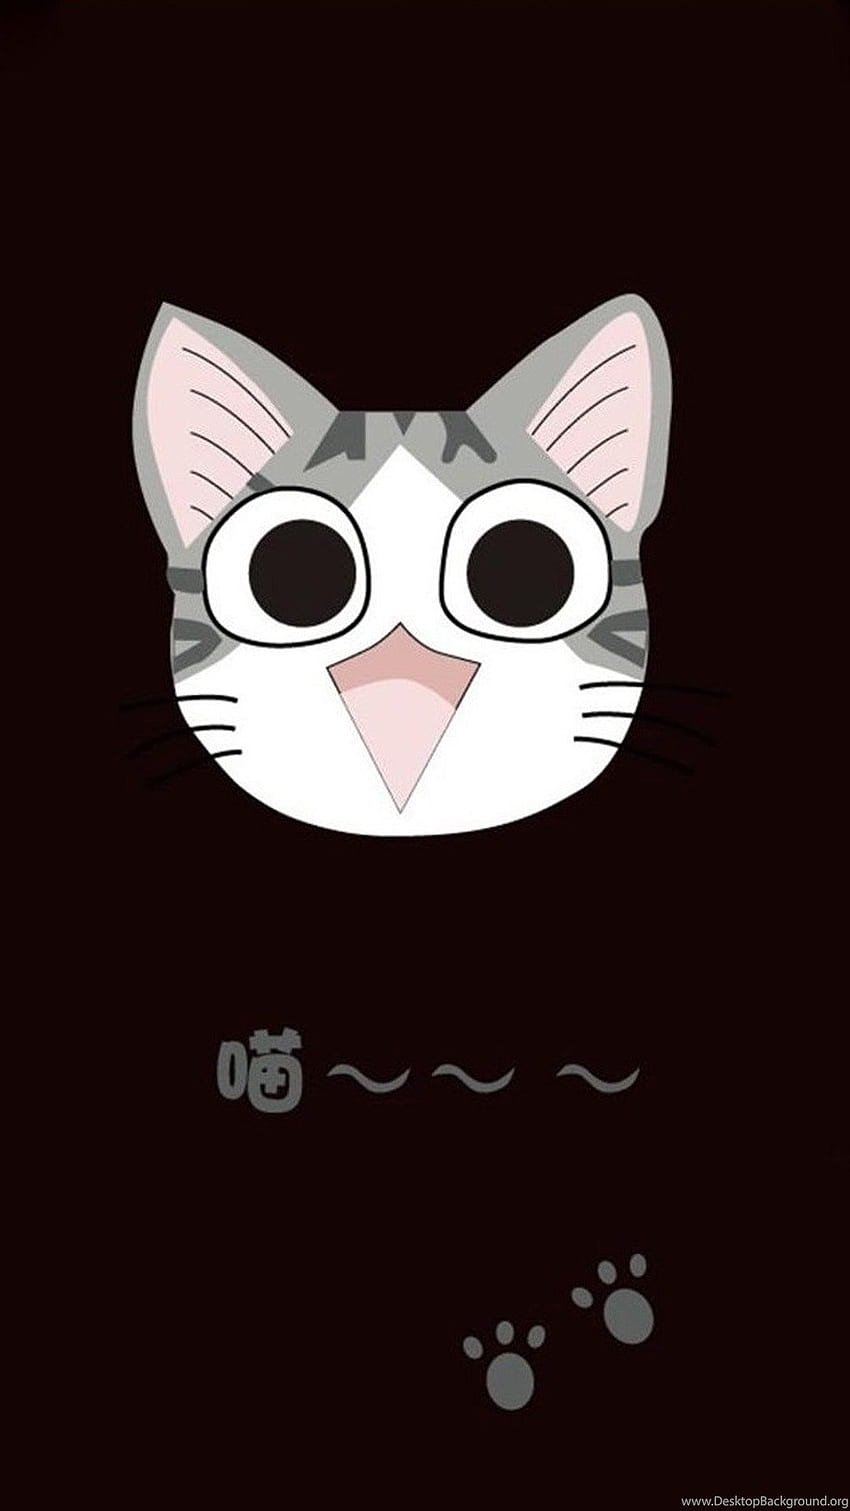 Cute Cat Cartoon 06 Galaxy S5 Background, Cute Black Cat Cartoon HD phone wallpaper